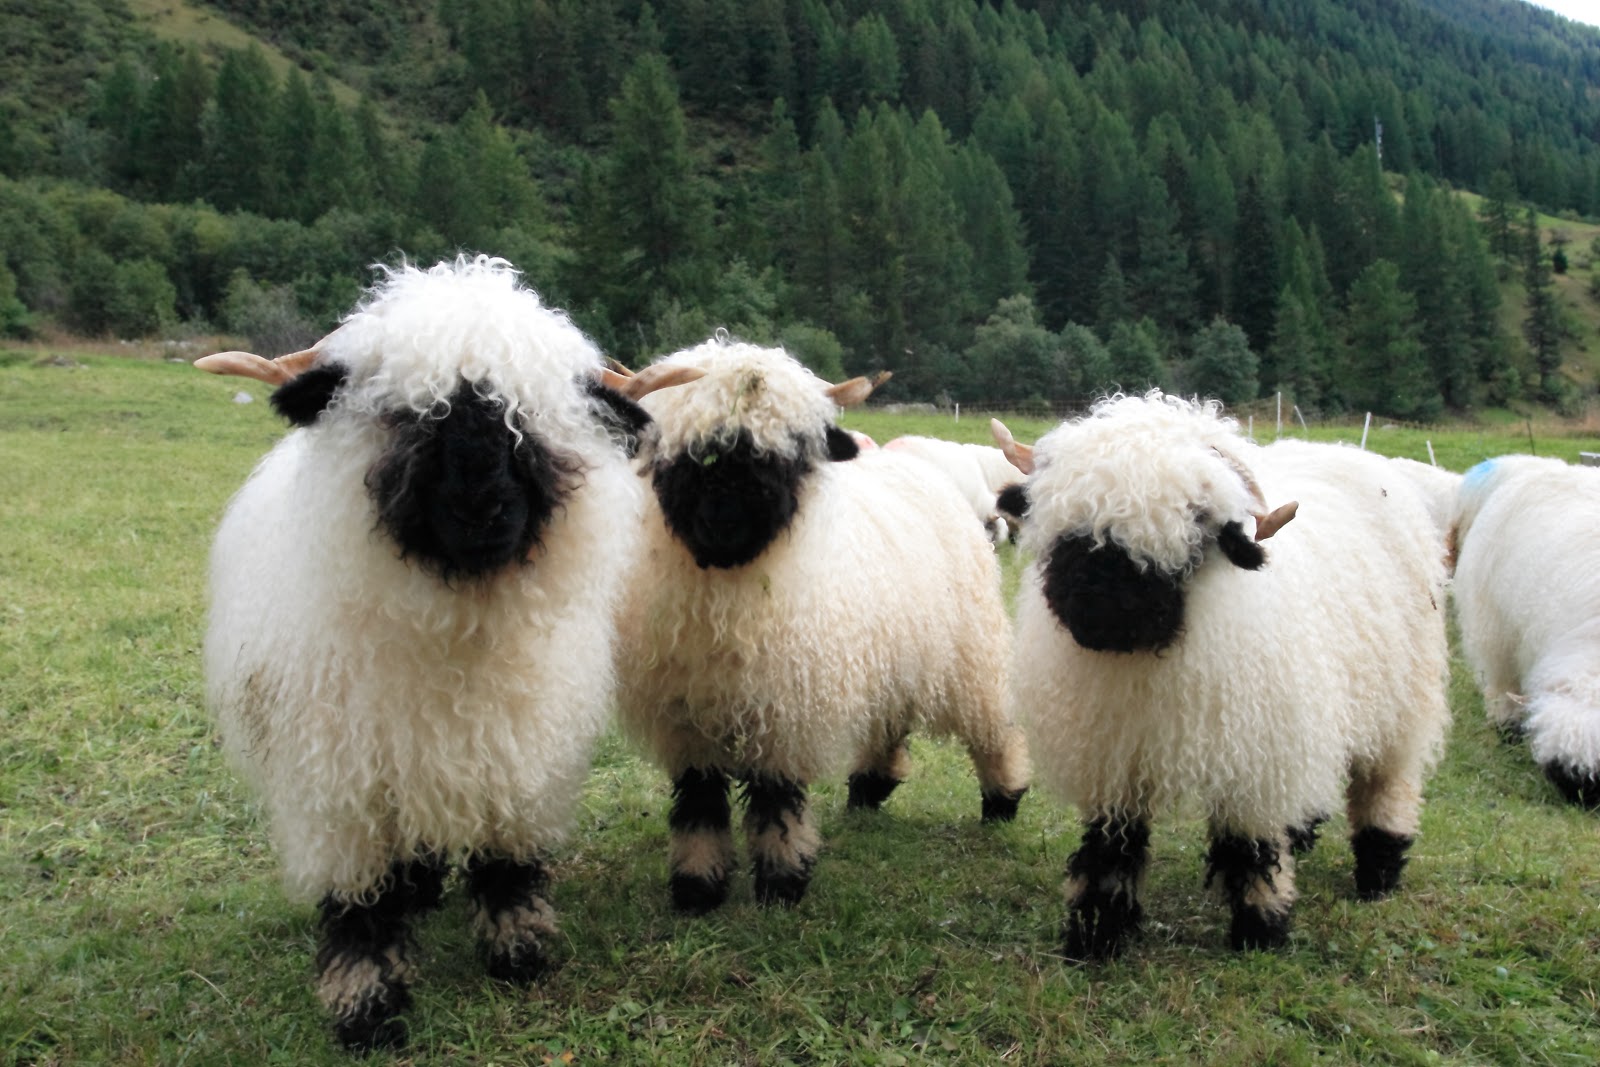 Nehéz eldönteni, hogy aranyosak vagy rémisztőek ezek a bárányok